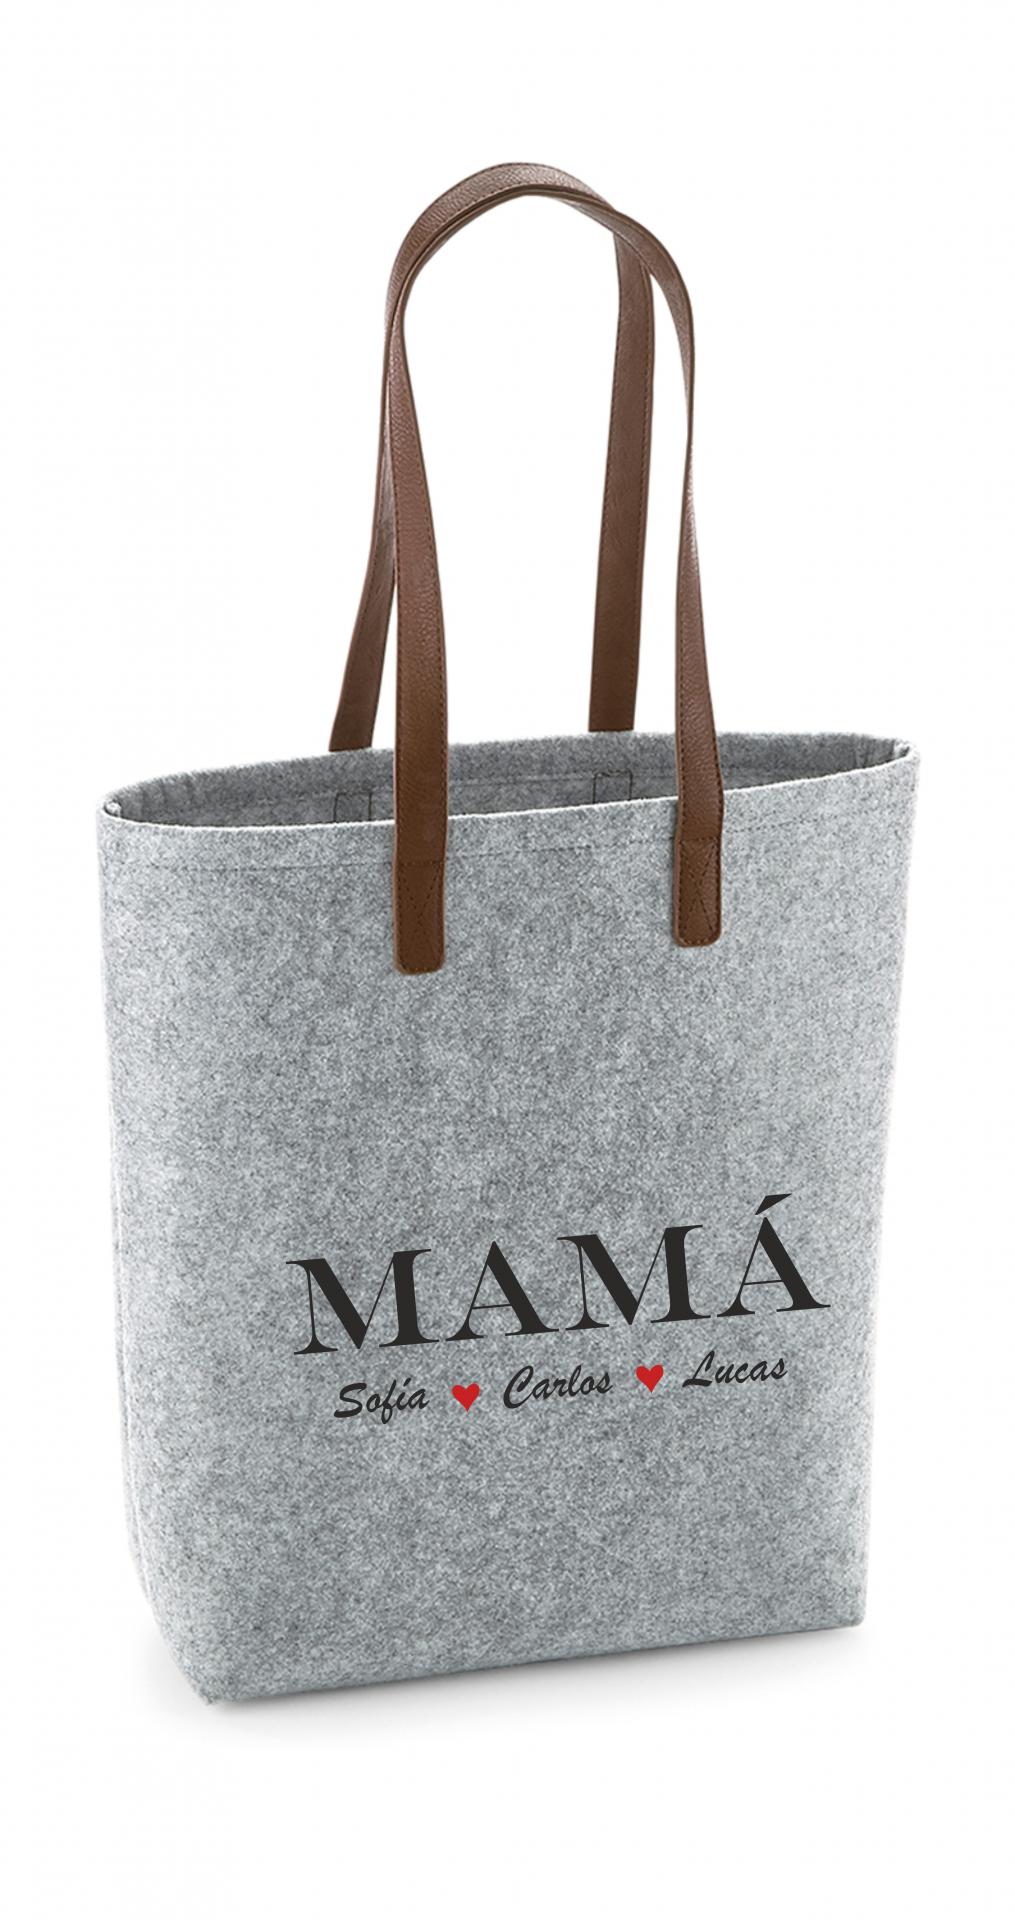 Bolso Personalizado Mamá - bolso de fieltro - bolsa -  idea regalo original,  regalo personalizado, regalo navidad, día de la madre, shopper fieltro.